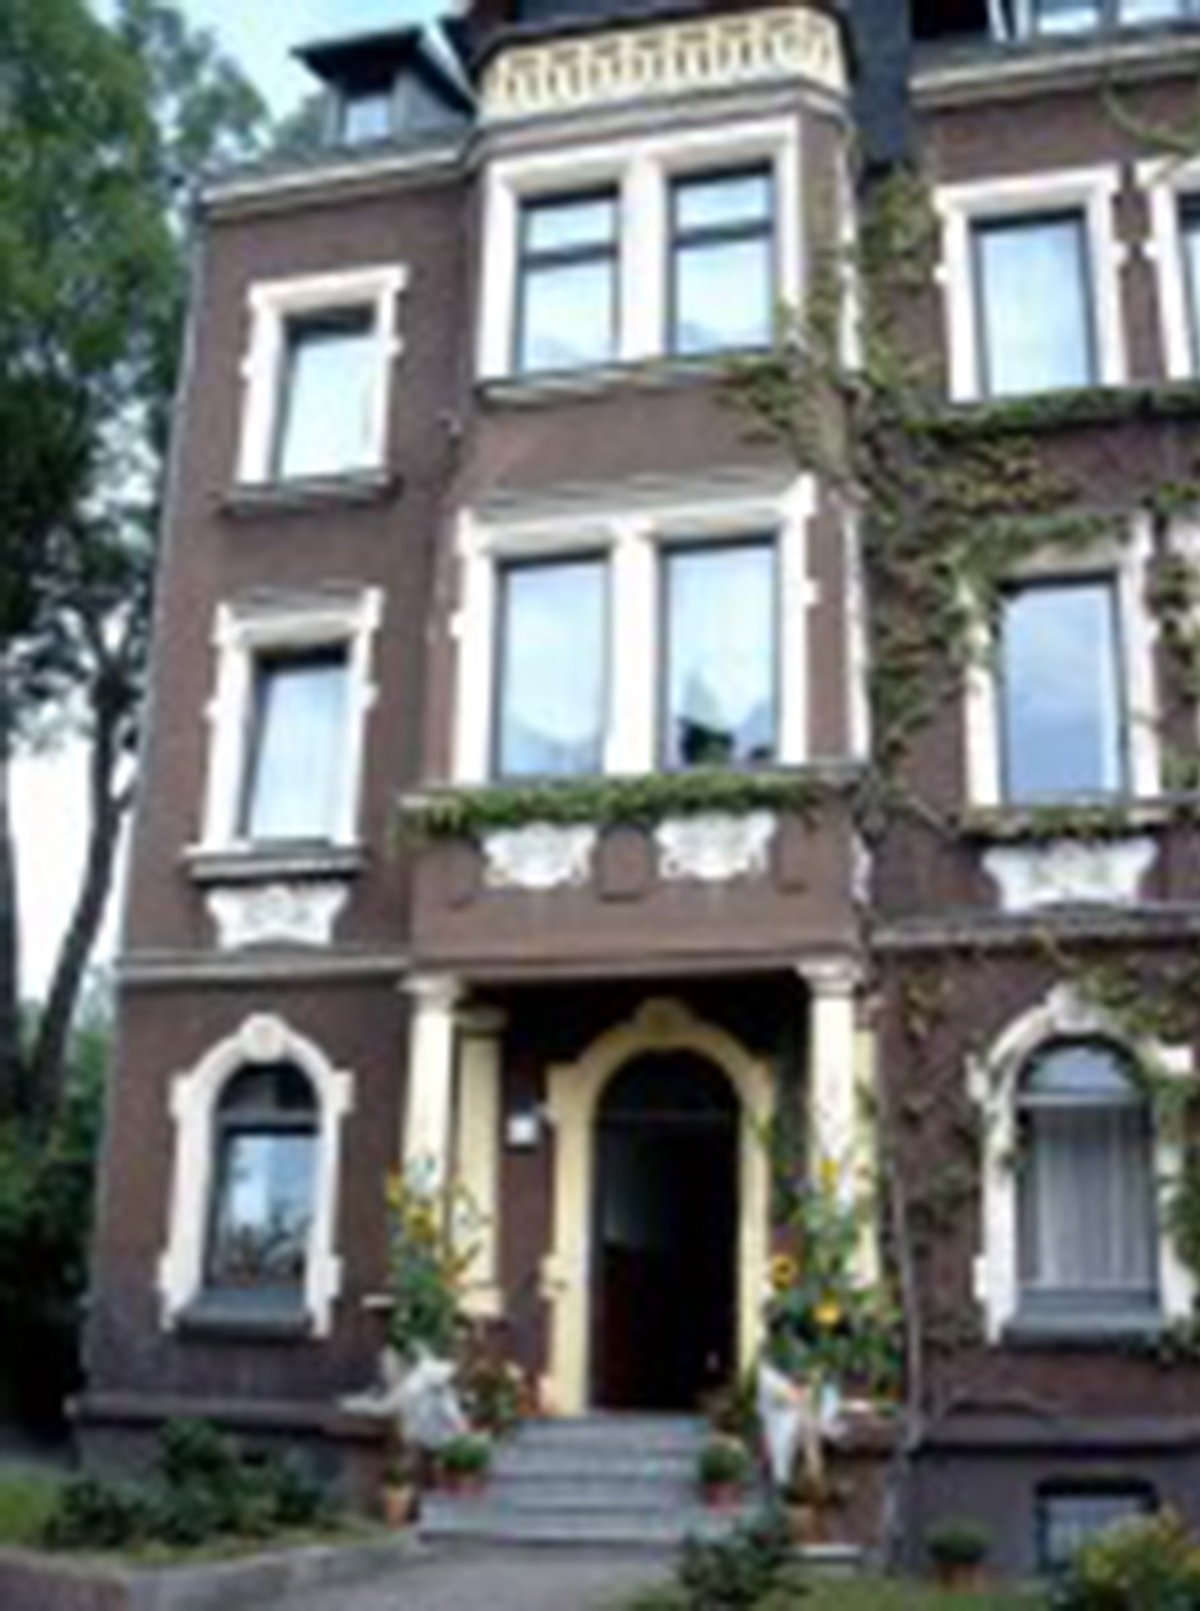 zu sehen ist die Hausgemeinschaft Schillerstraße